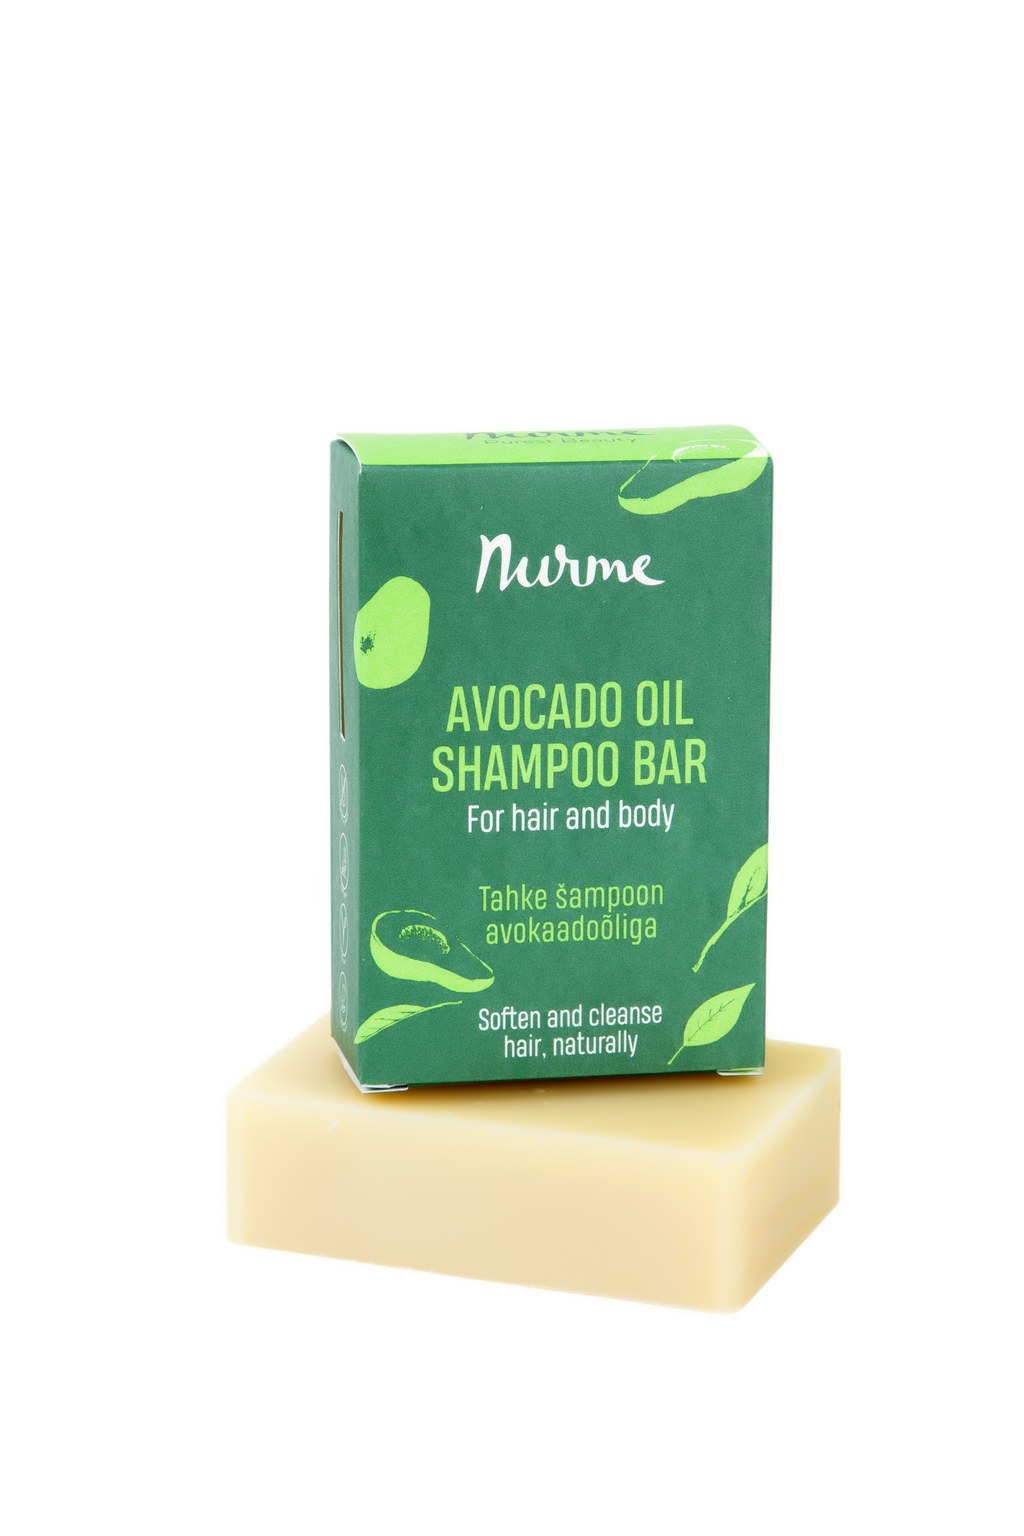 Nurme Avocado Oil Shampoo Bar 100g